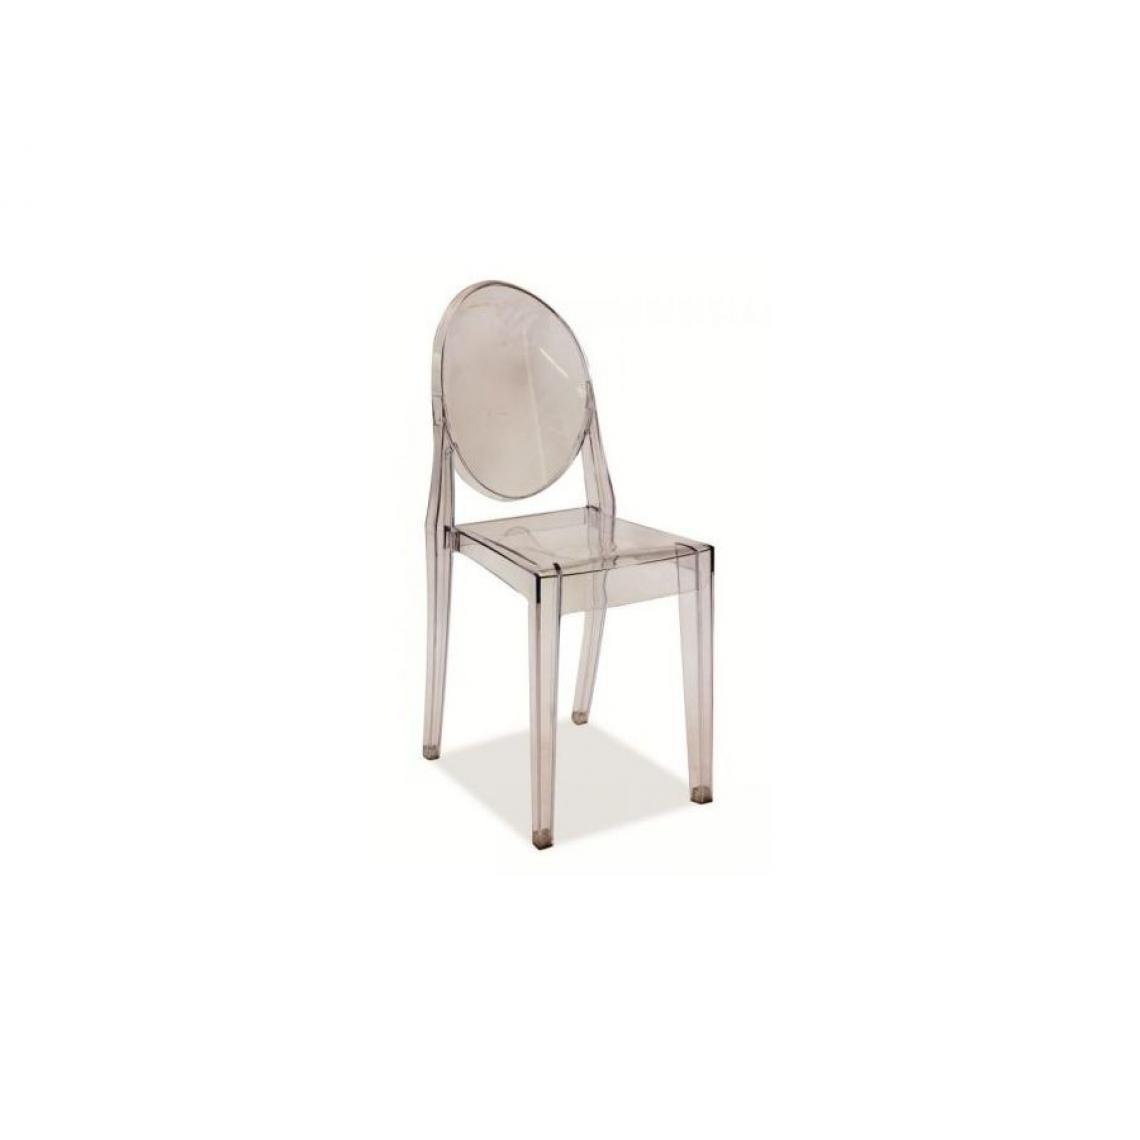 Hucoco - MARTEN | Chaise style moderne salon salle à manger | Dimensions 90x38x51 cm | Tissu haute qualité | Chaose style contemporain - Transparent - Chaises